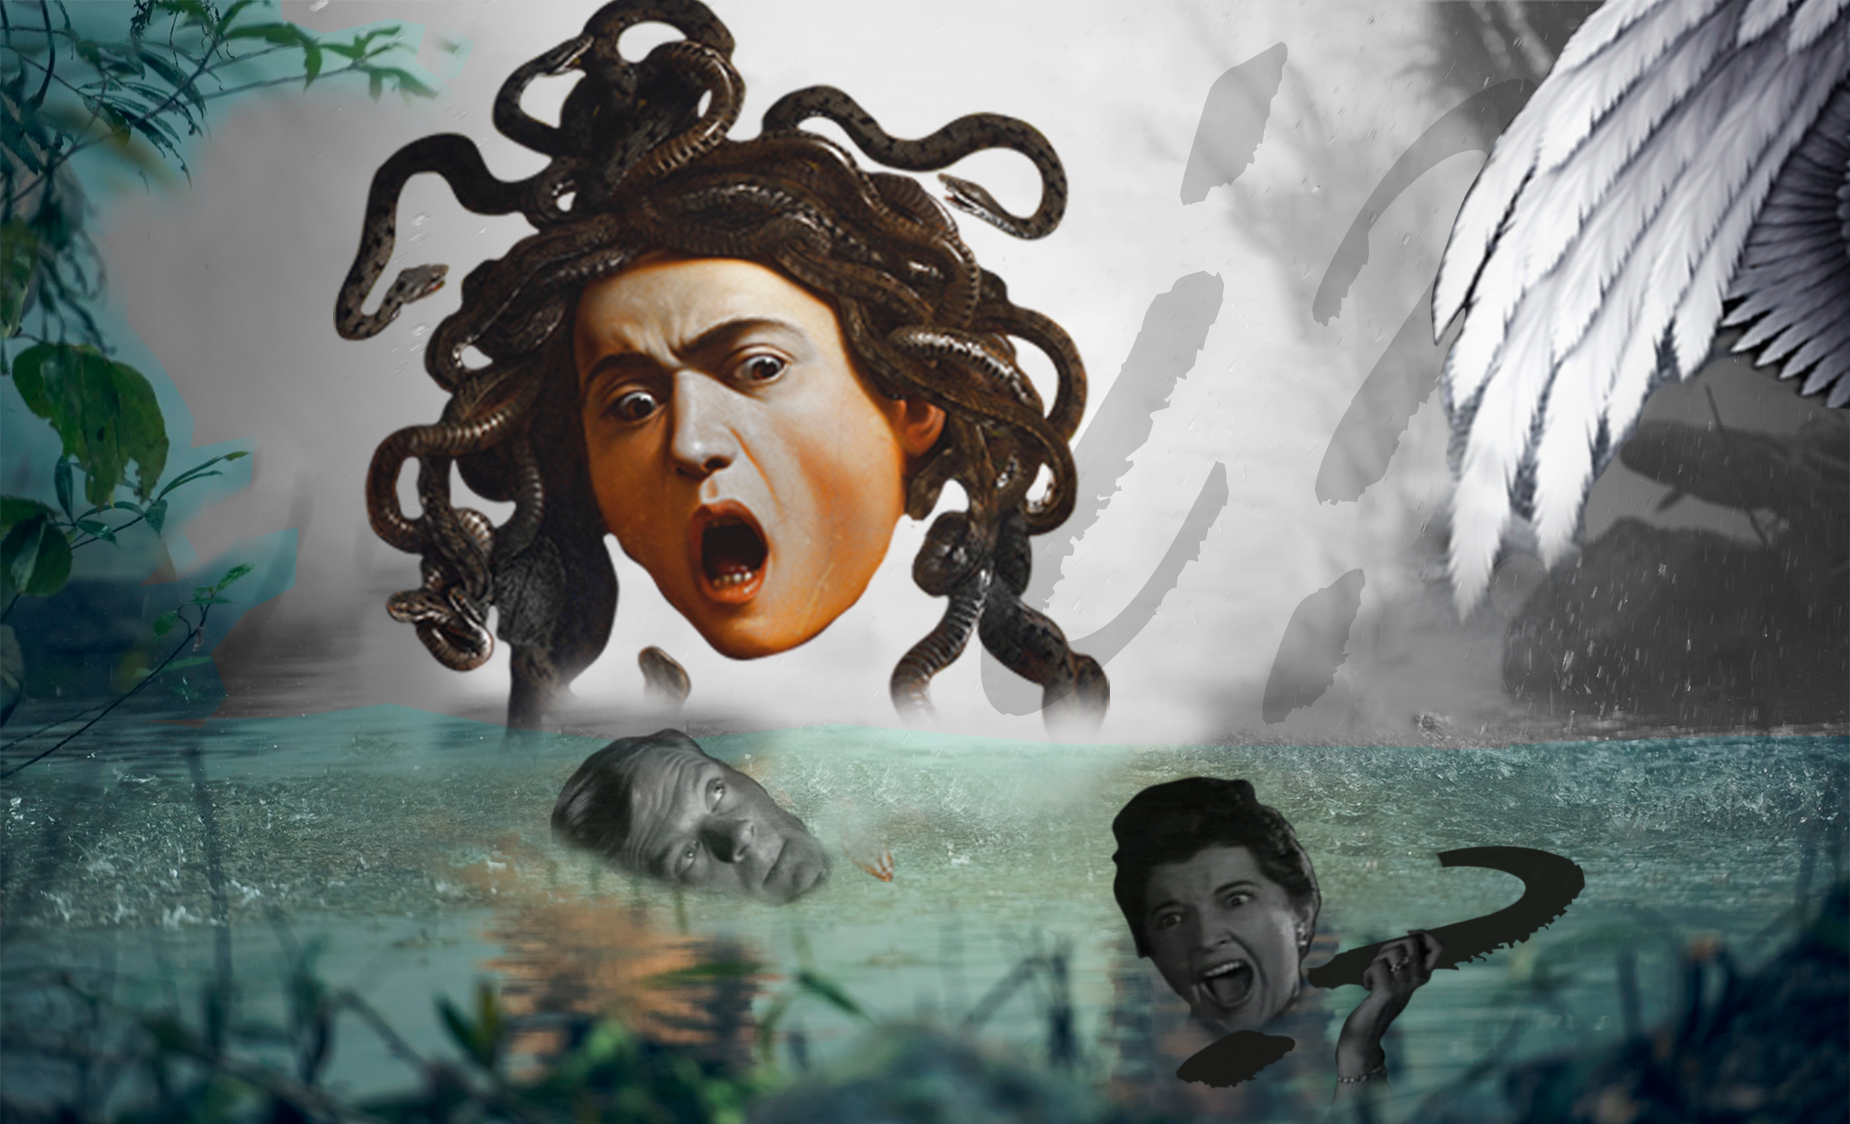 Imagen surrealista.Medusa Caravaggio-lago lluvia-cabezas balnco y negro- alas con cabeza mujer- interrogantes. Loco Mundo Arte y Bohemia